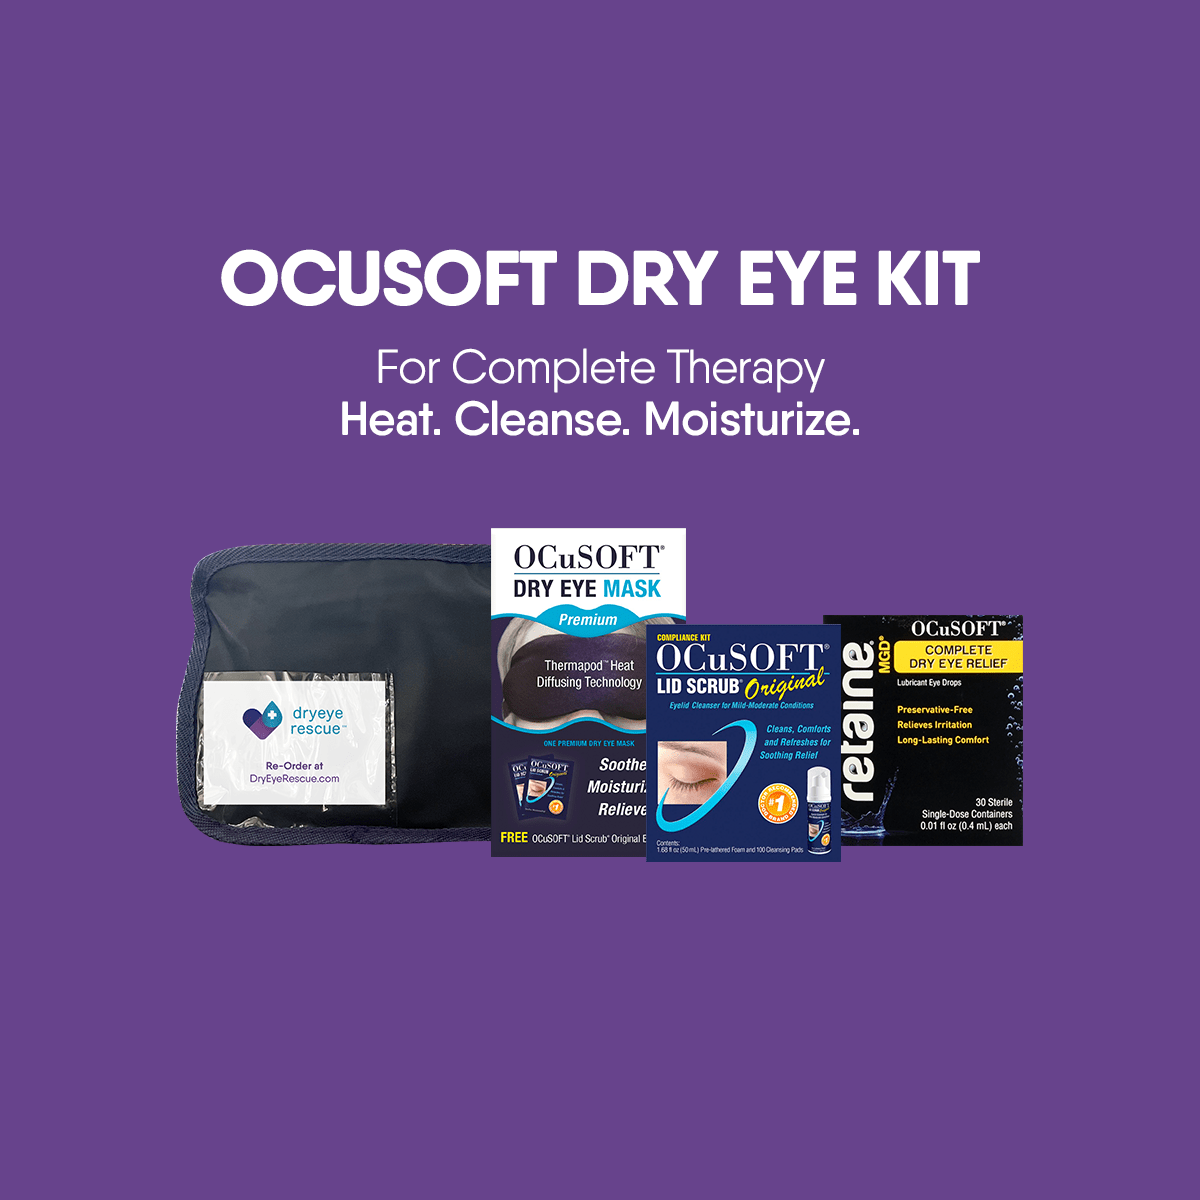 OCuSOFT Dry Eye Kit - Dryeye Rescue